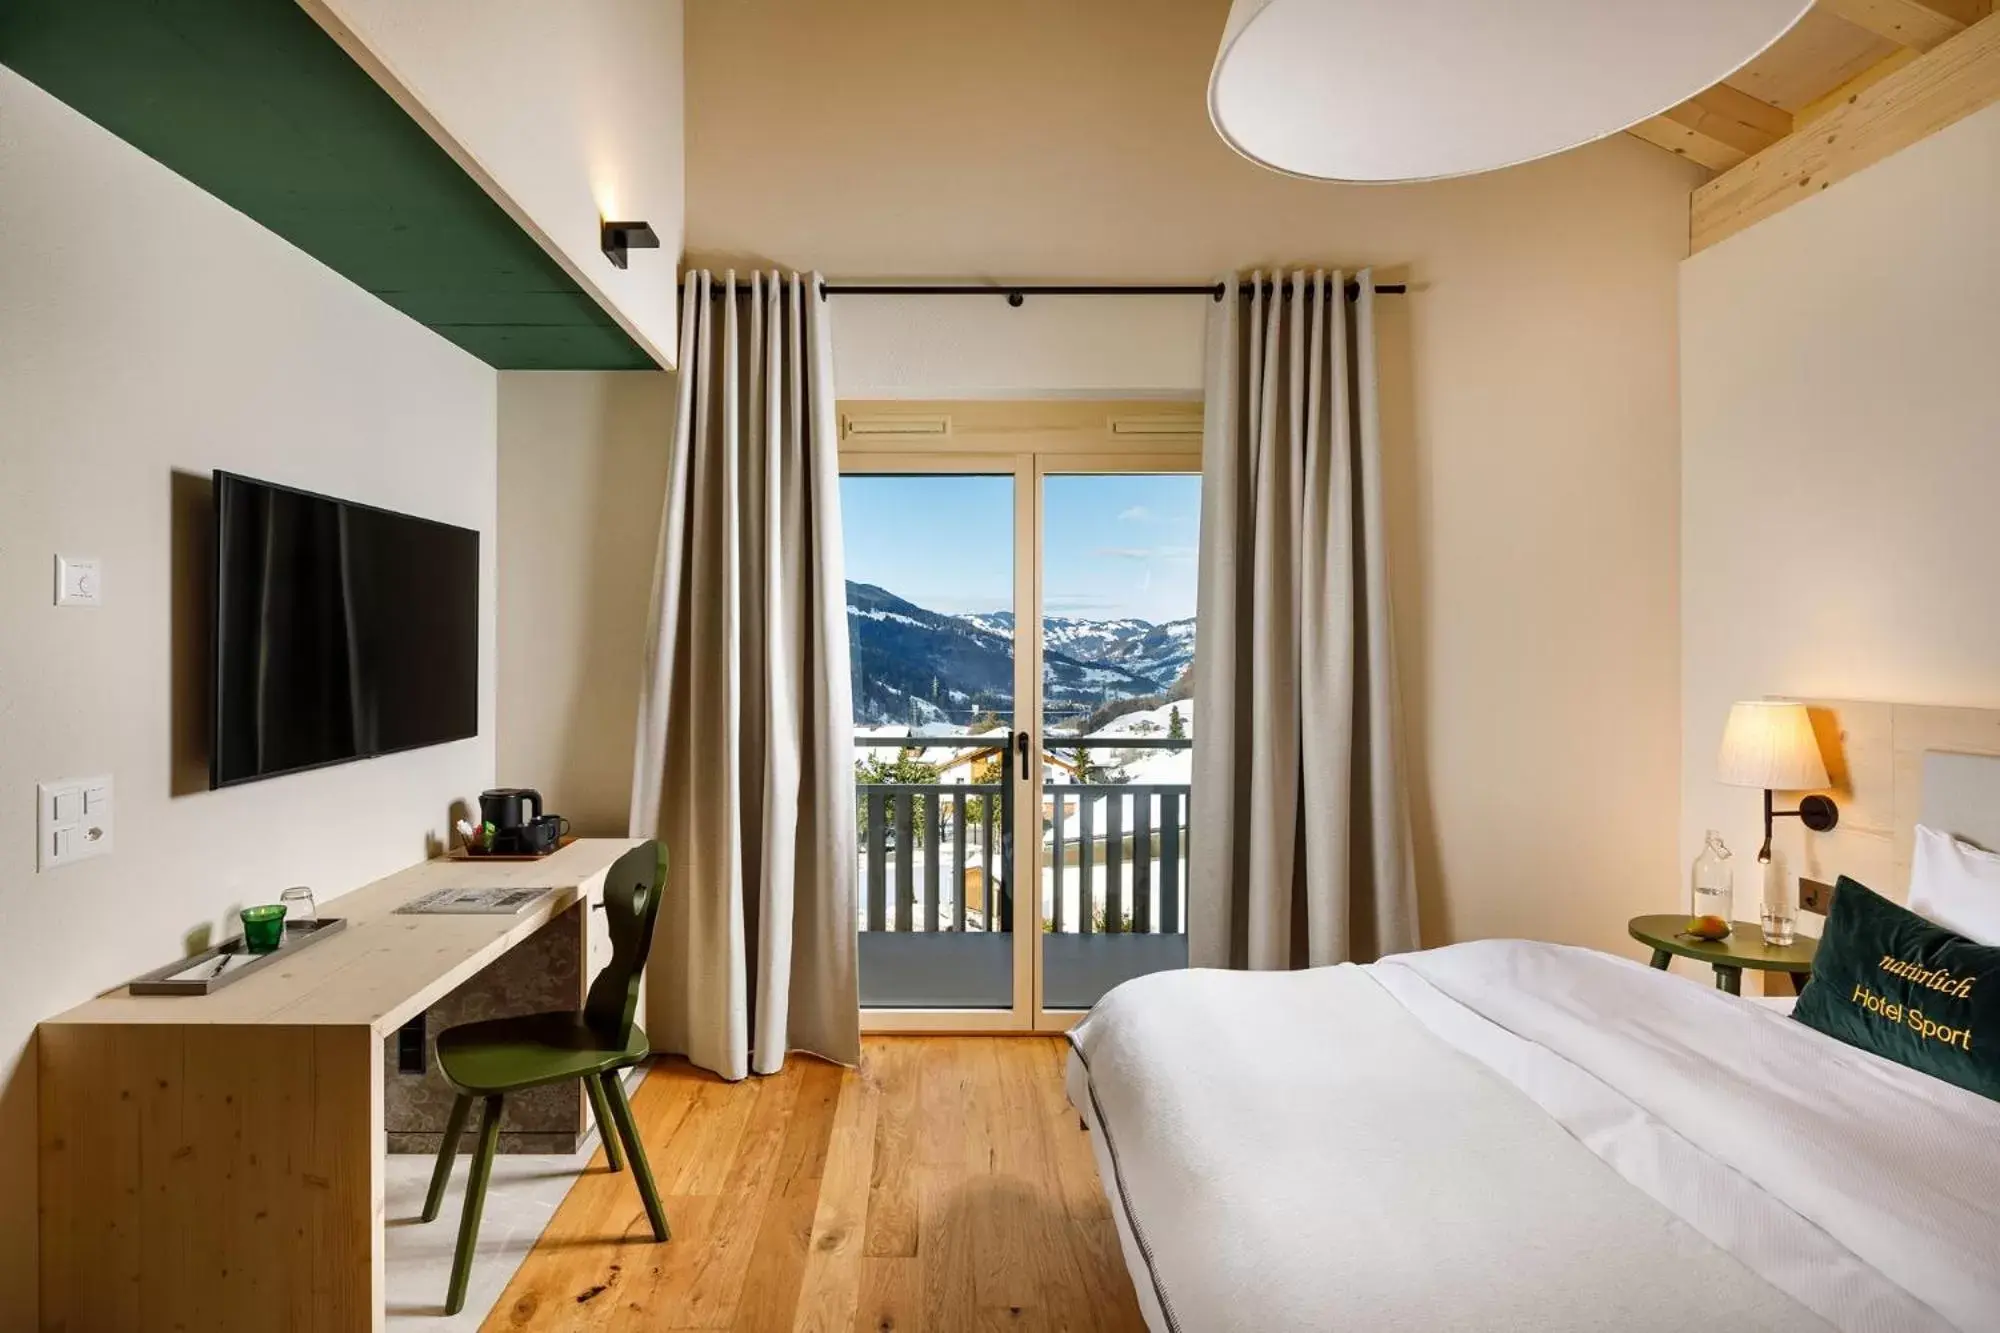 Balcony/Terrace in Hotel Sport Klosters